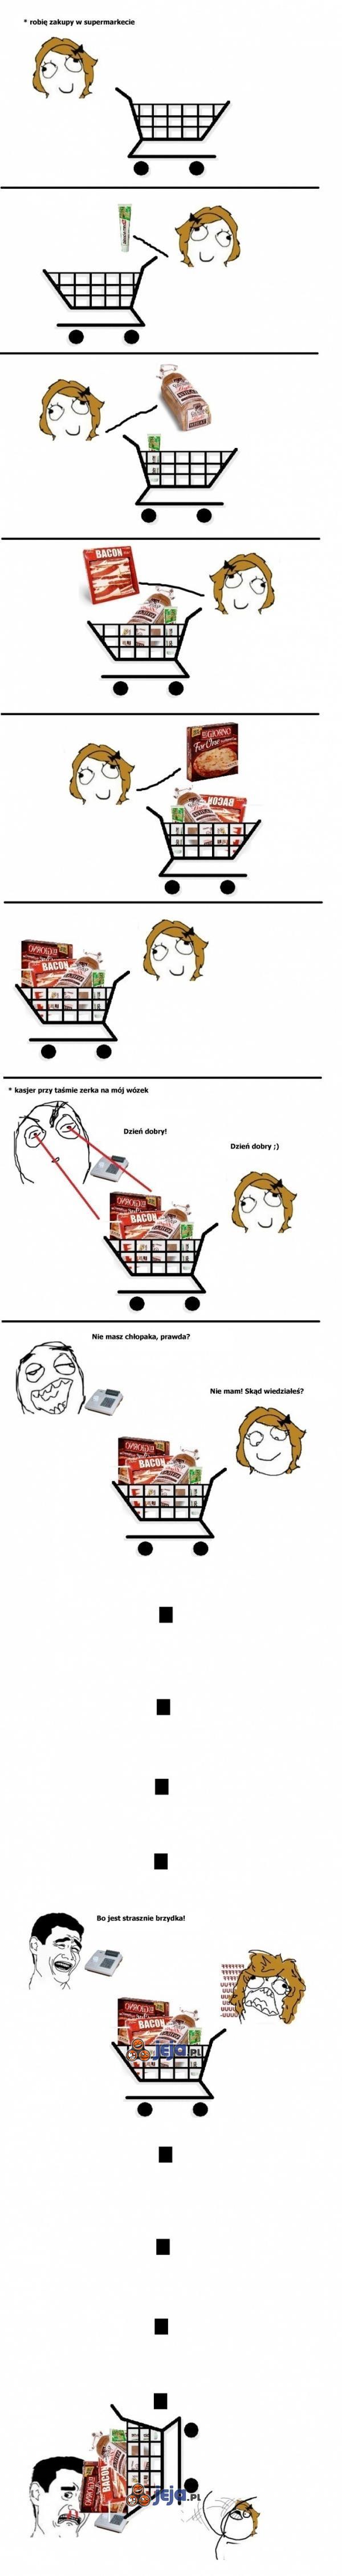 Zakupy w supermarkecie